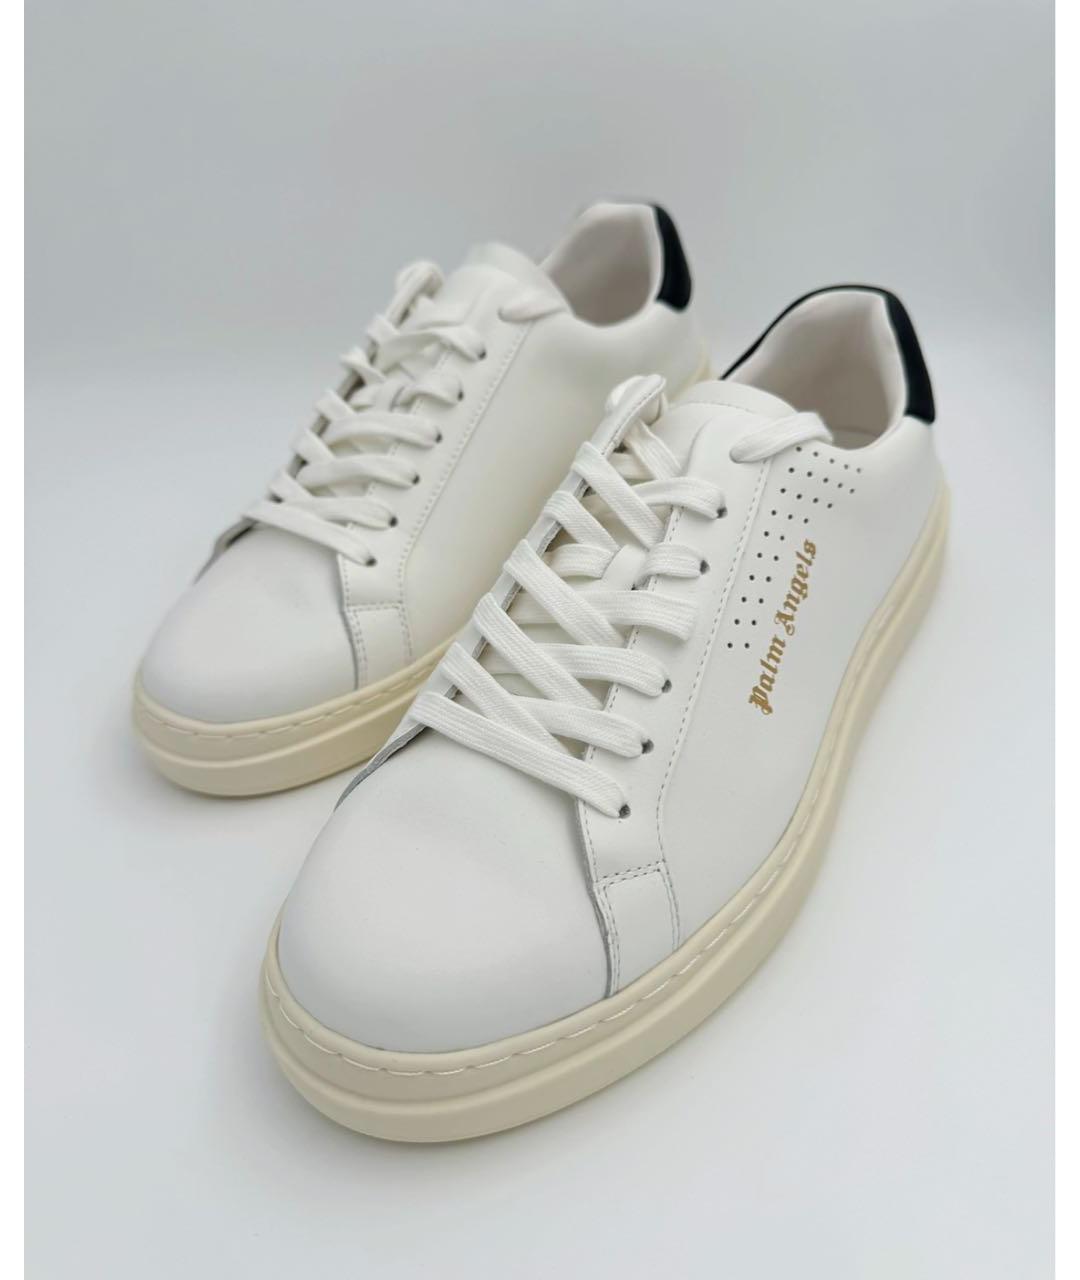 PALM ANGELS Белые кожаные низкие кроссовки / кеды, фото 2